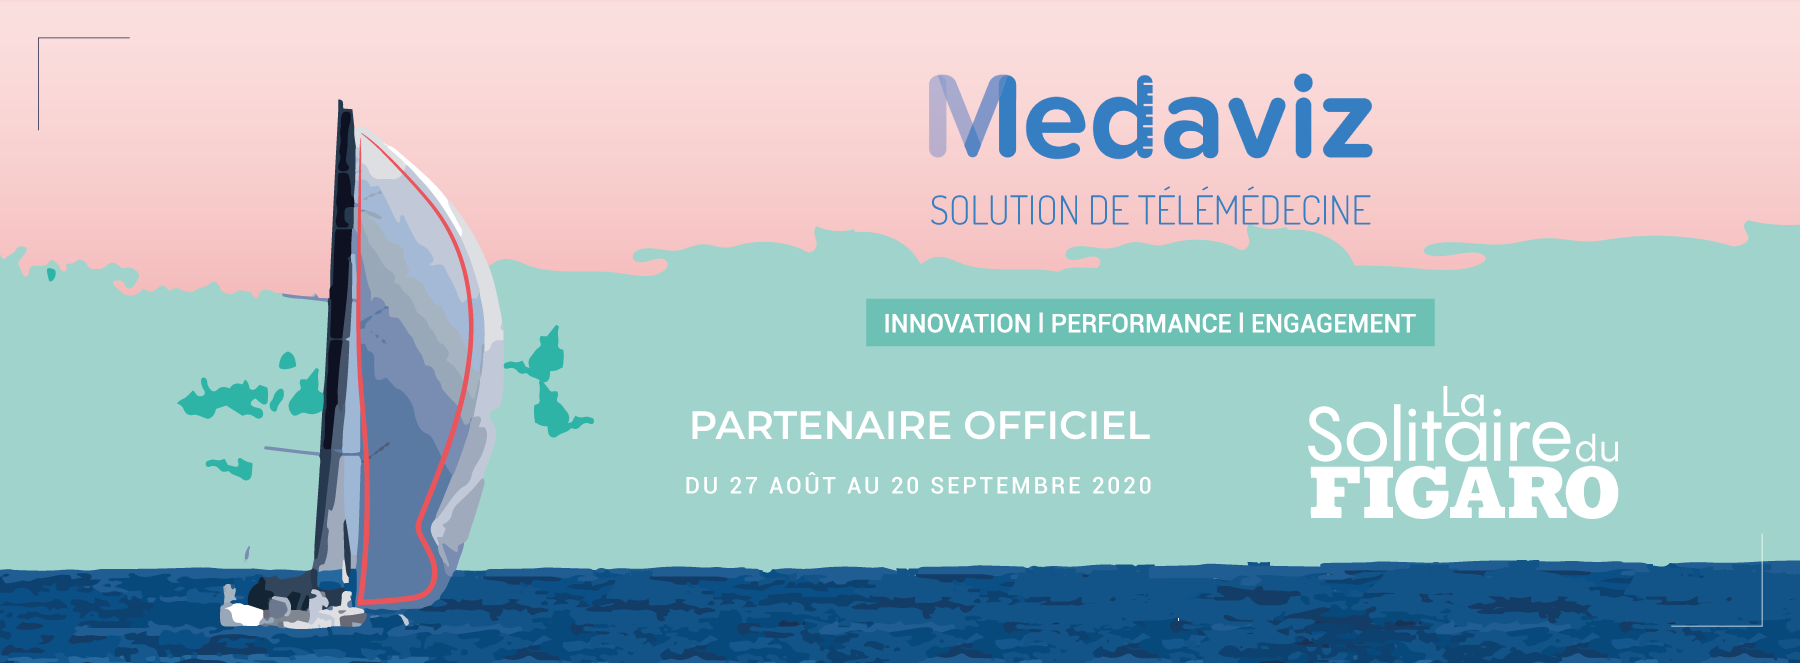 Image de couverture de: Medaviz Partenaire Officiel de La Solitaire du Figaro : participez au e-prologue avec Virtual Regatta !